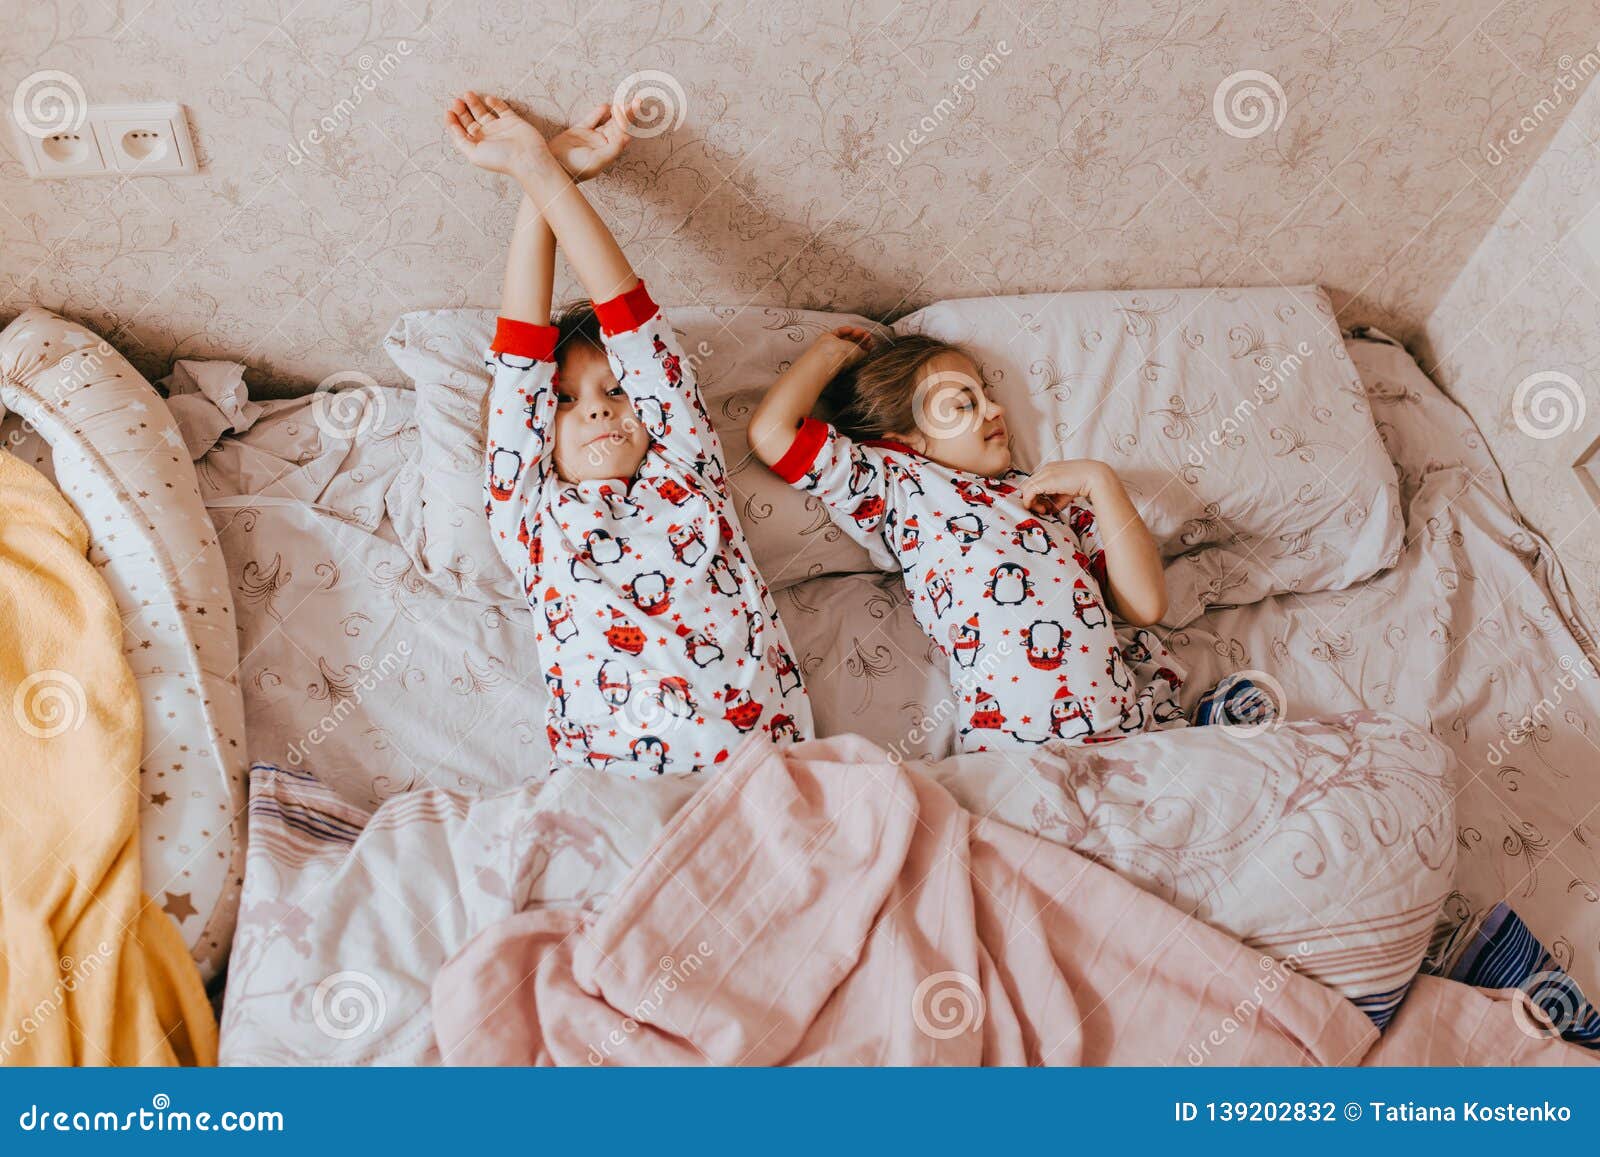 Пижаме ляжет. Фотосессия в пижаме. Дети спят в пижаме. Детки спят в пижамах. Пижама для девочки.